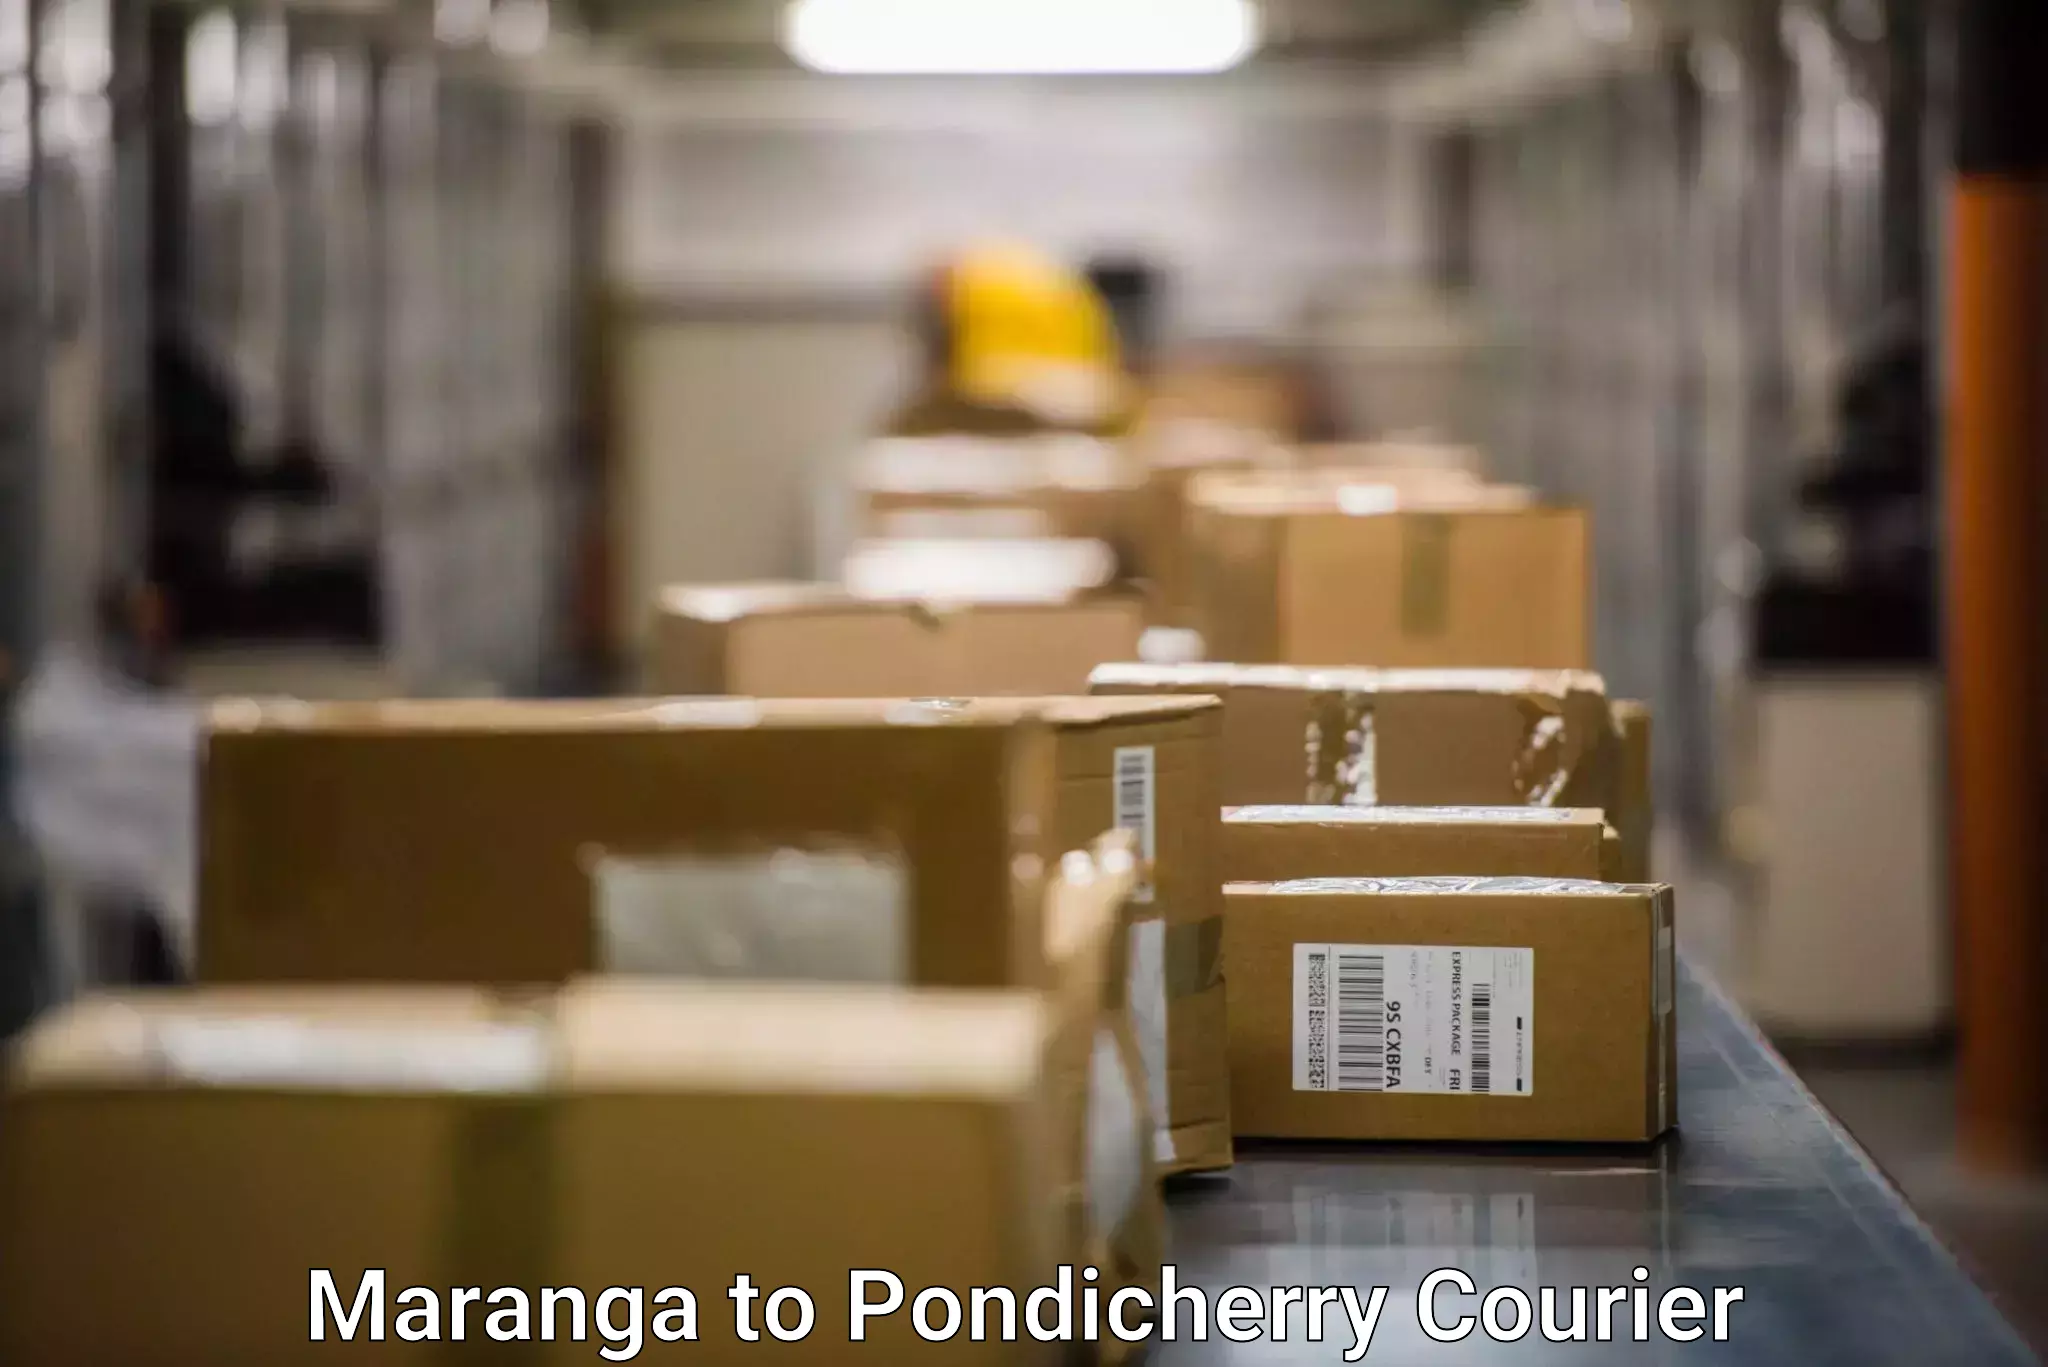 Shipping and handling Maranga to Pondicherry University